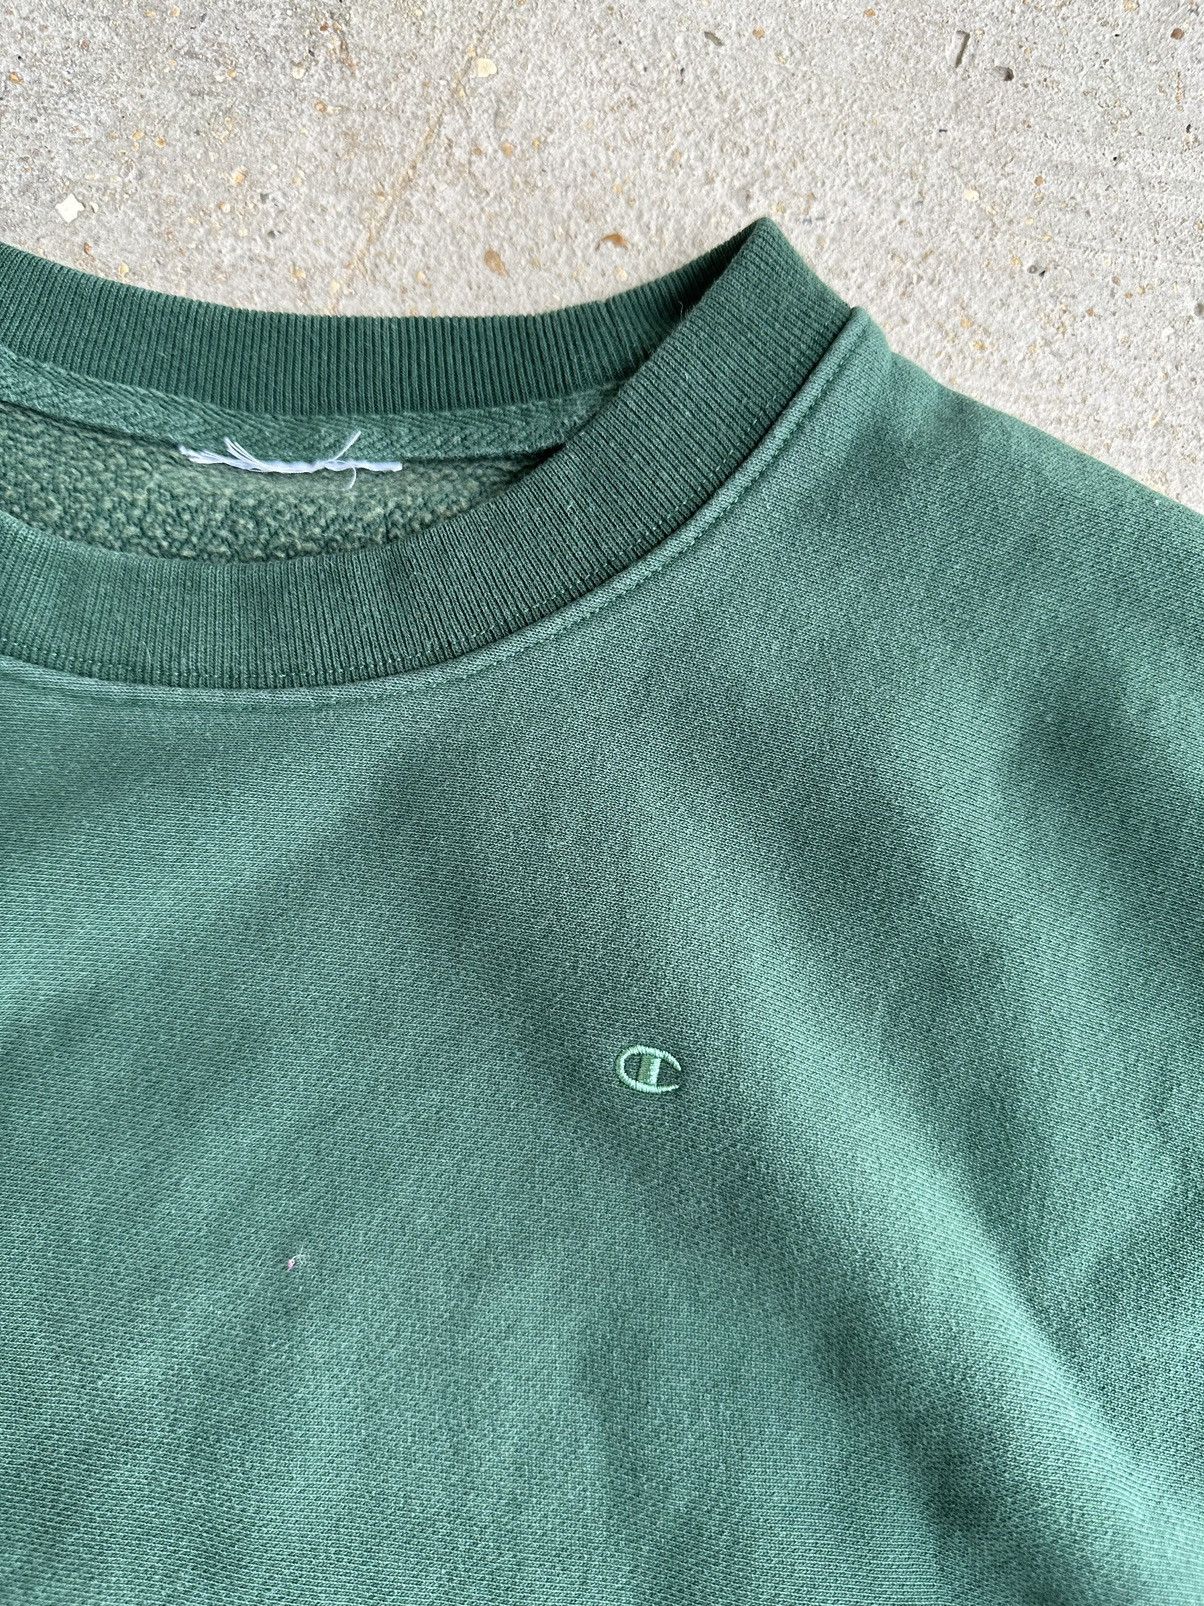 Vintage Vintage Champion Reverse Weave Cutoff Sweatshirt Size US L / EU 52-54 / 3 - 2 Preview